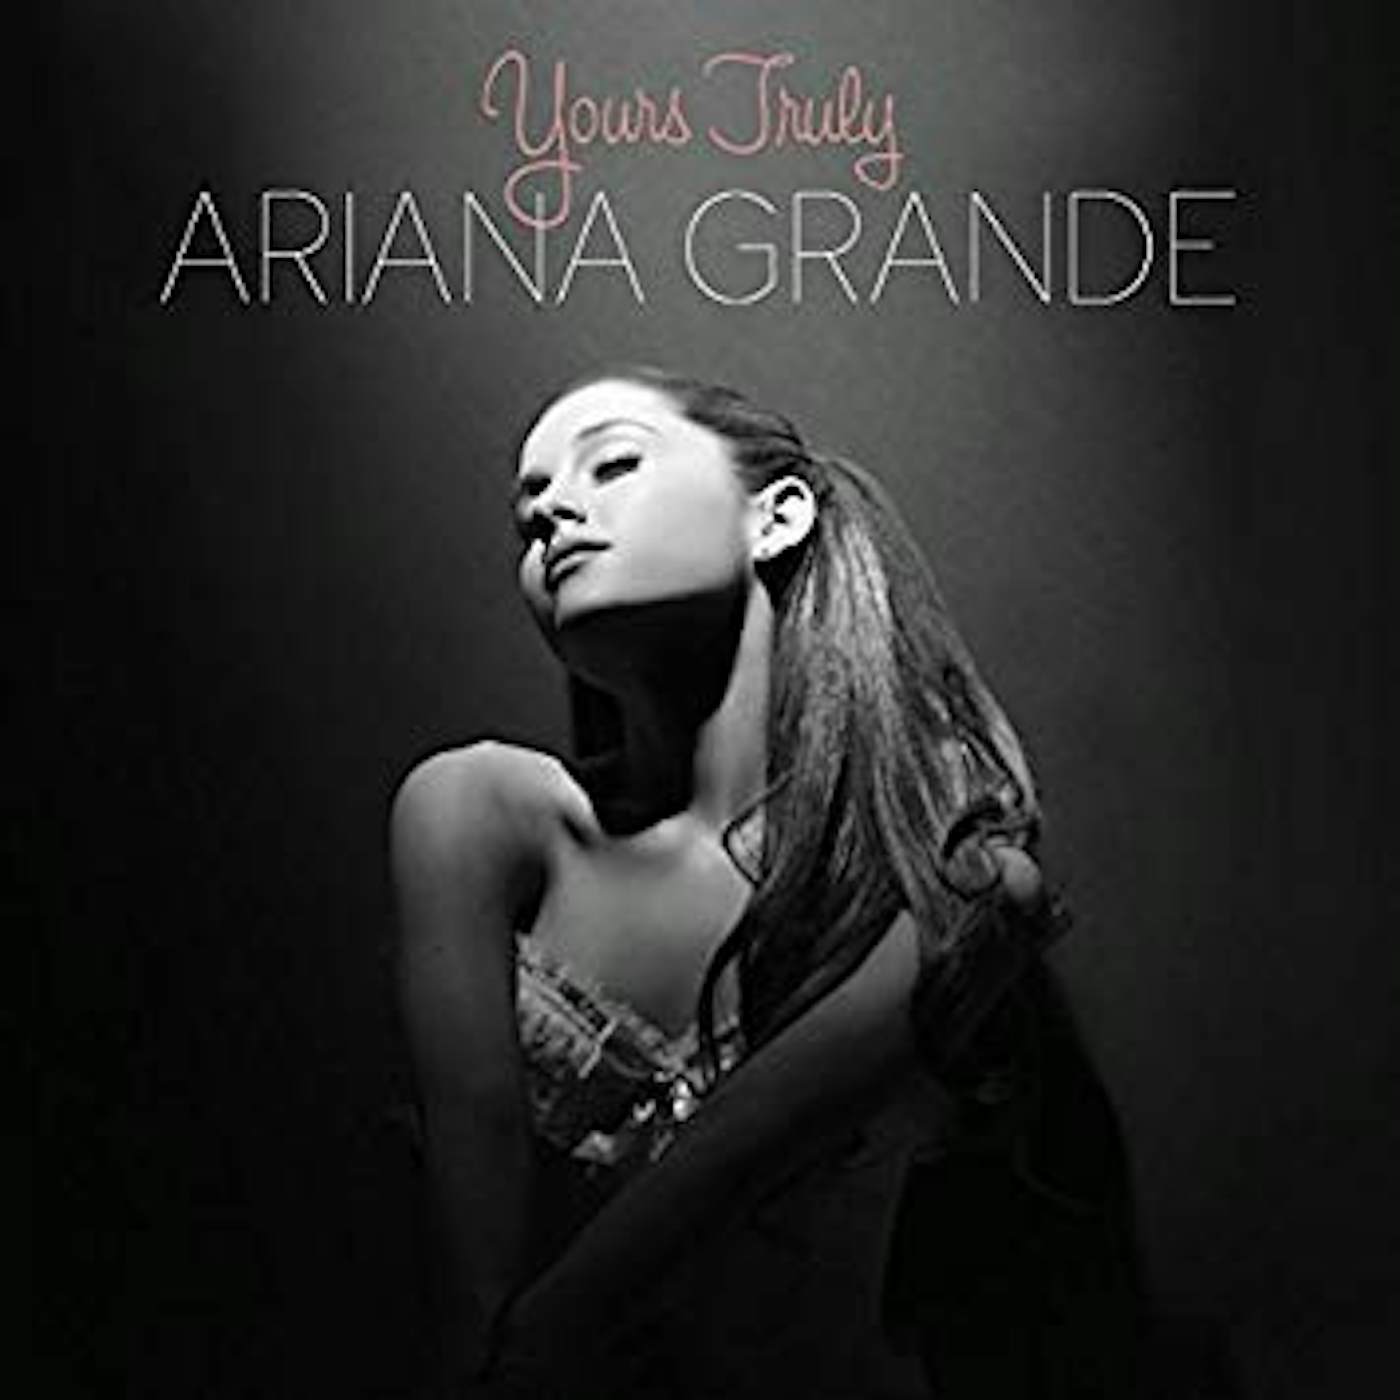 Positions: Deluxe Vinyl LP - Ariana Grande